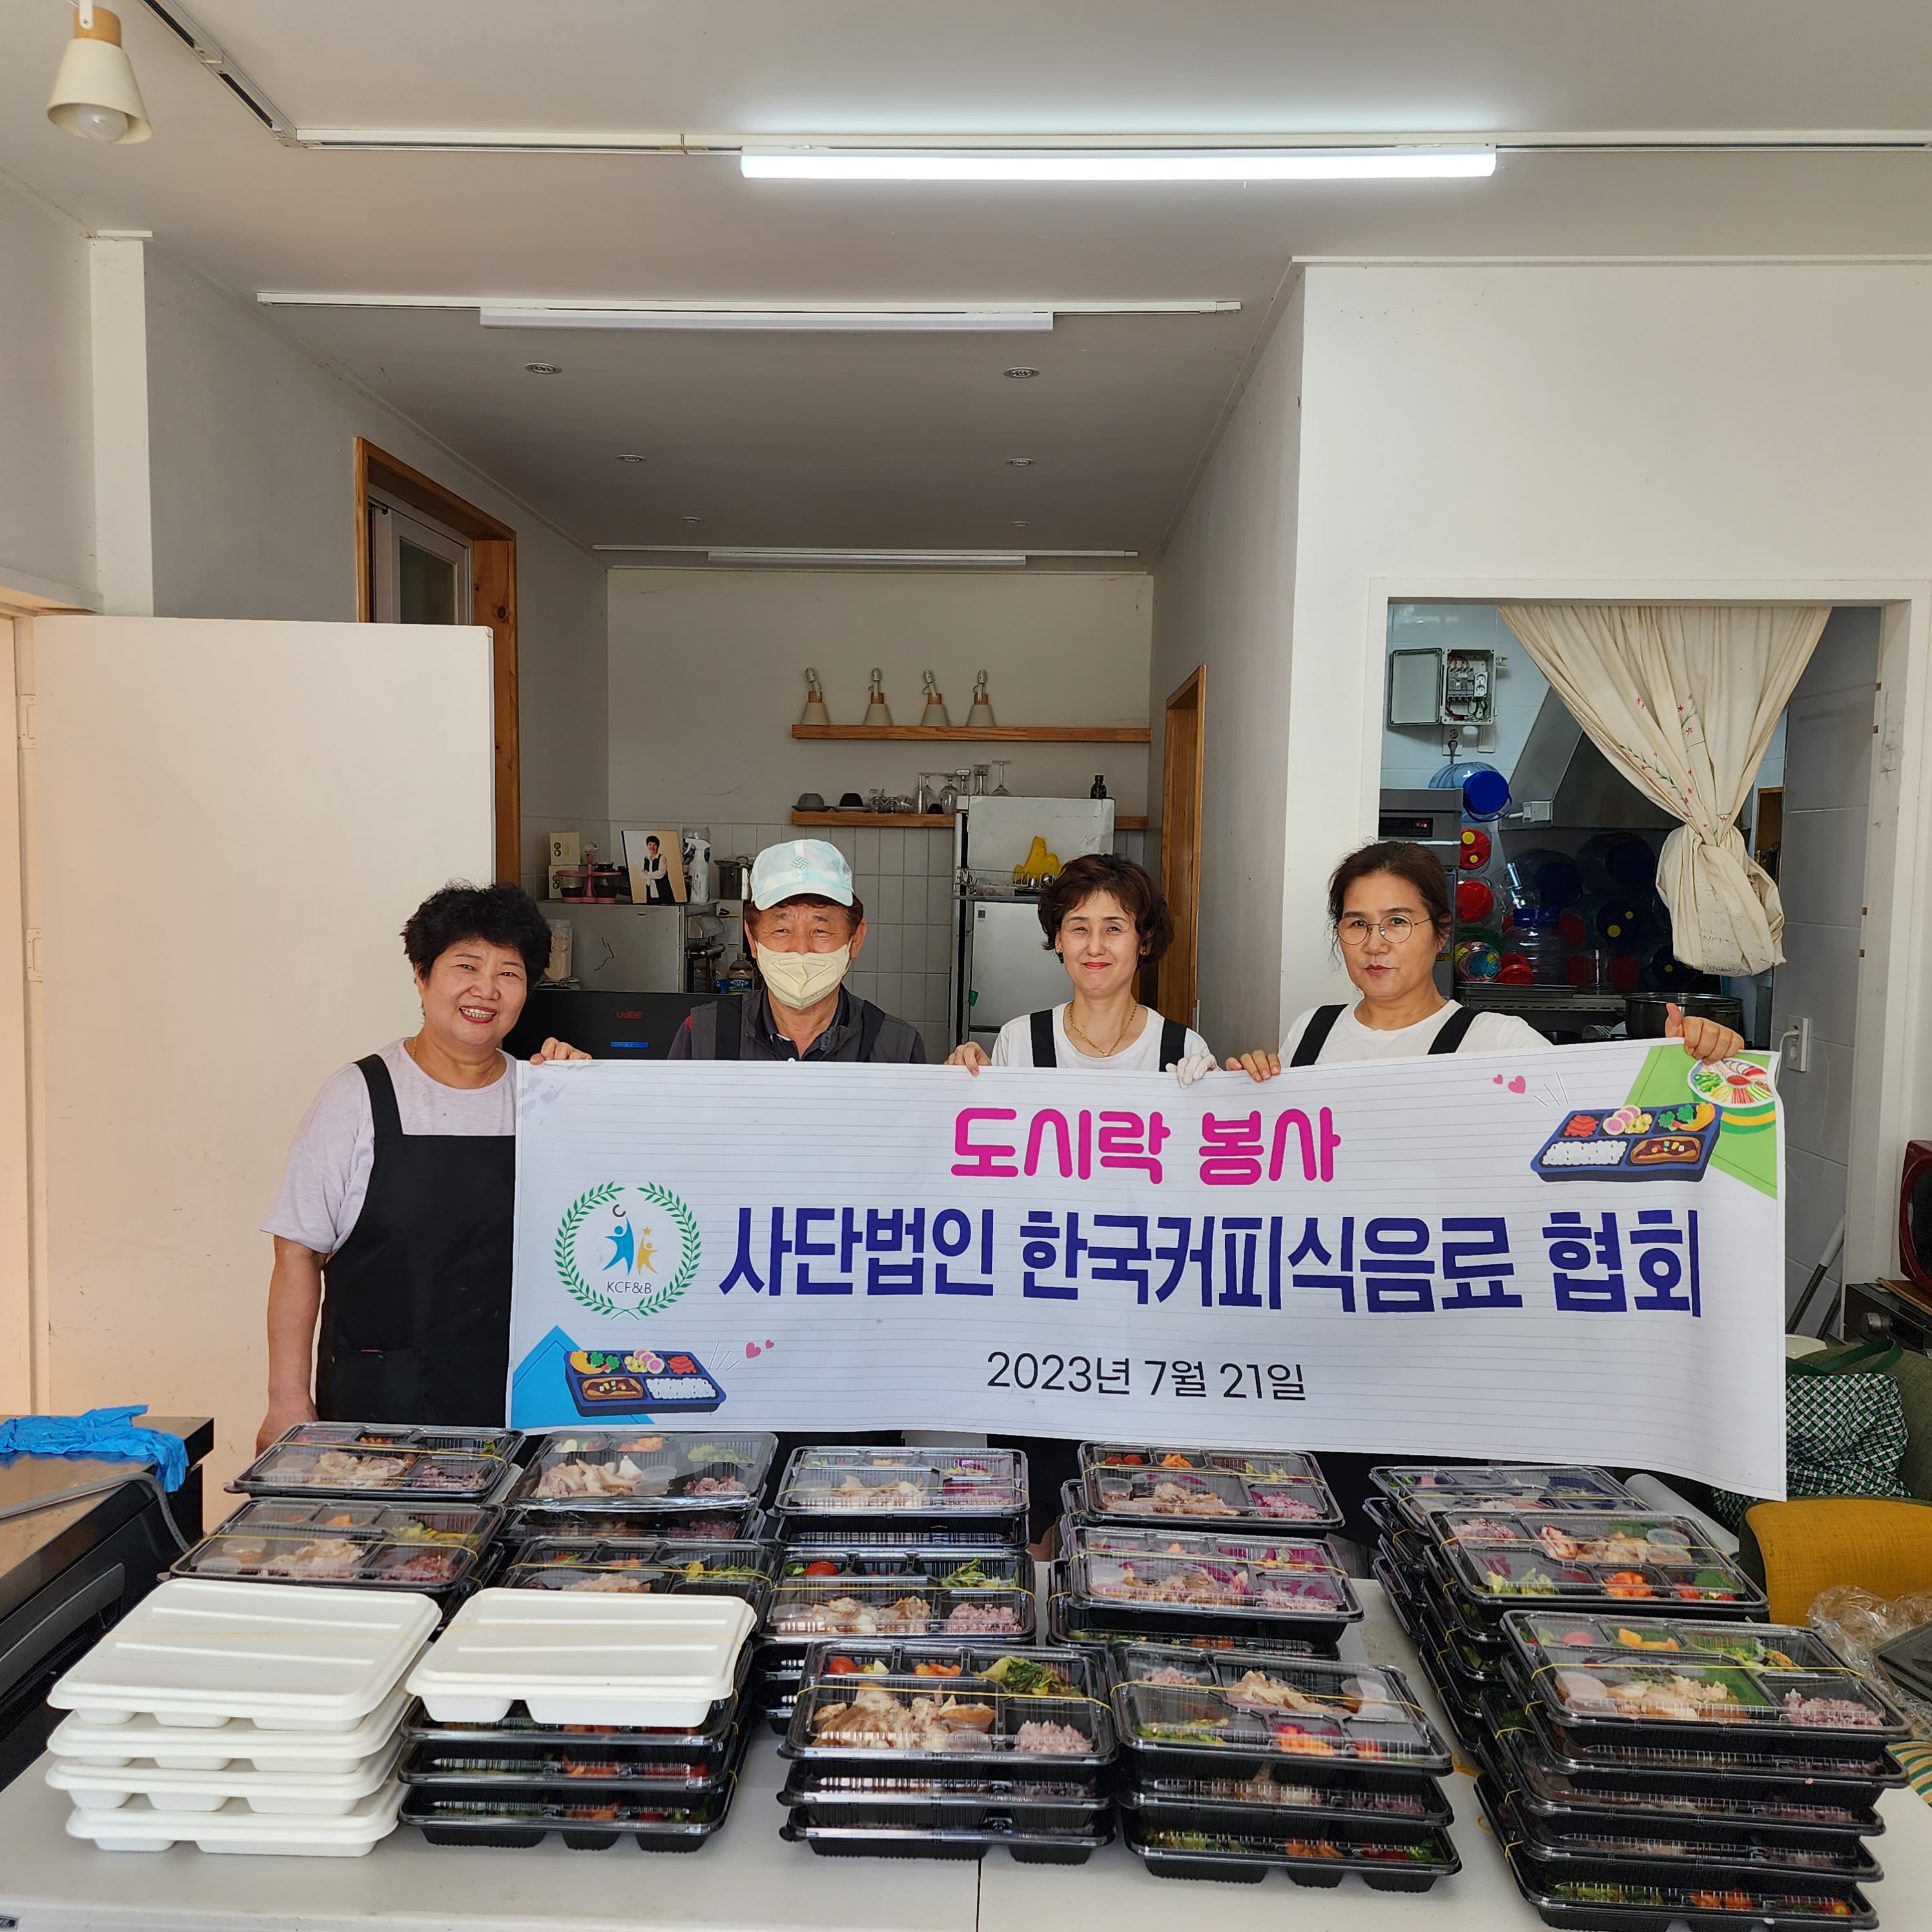 부곡2동,(사)한국커피식음료협회 도시락 나눔 0